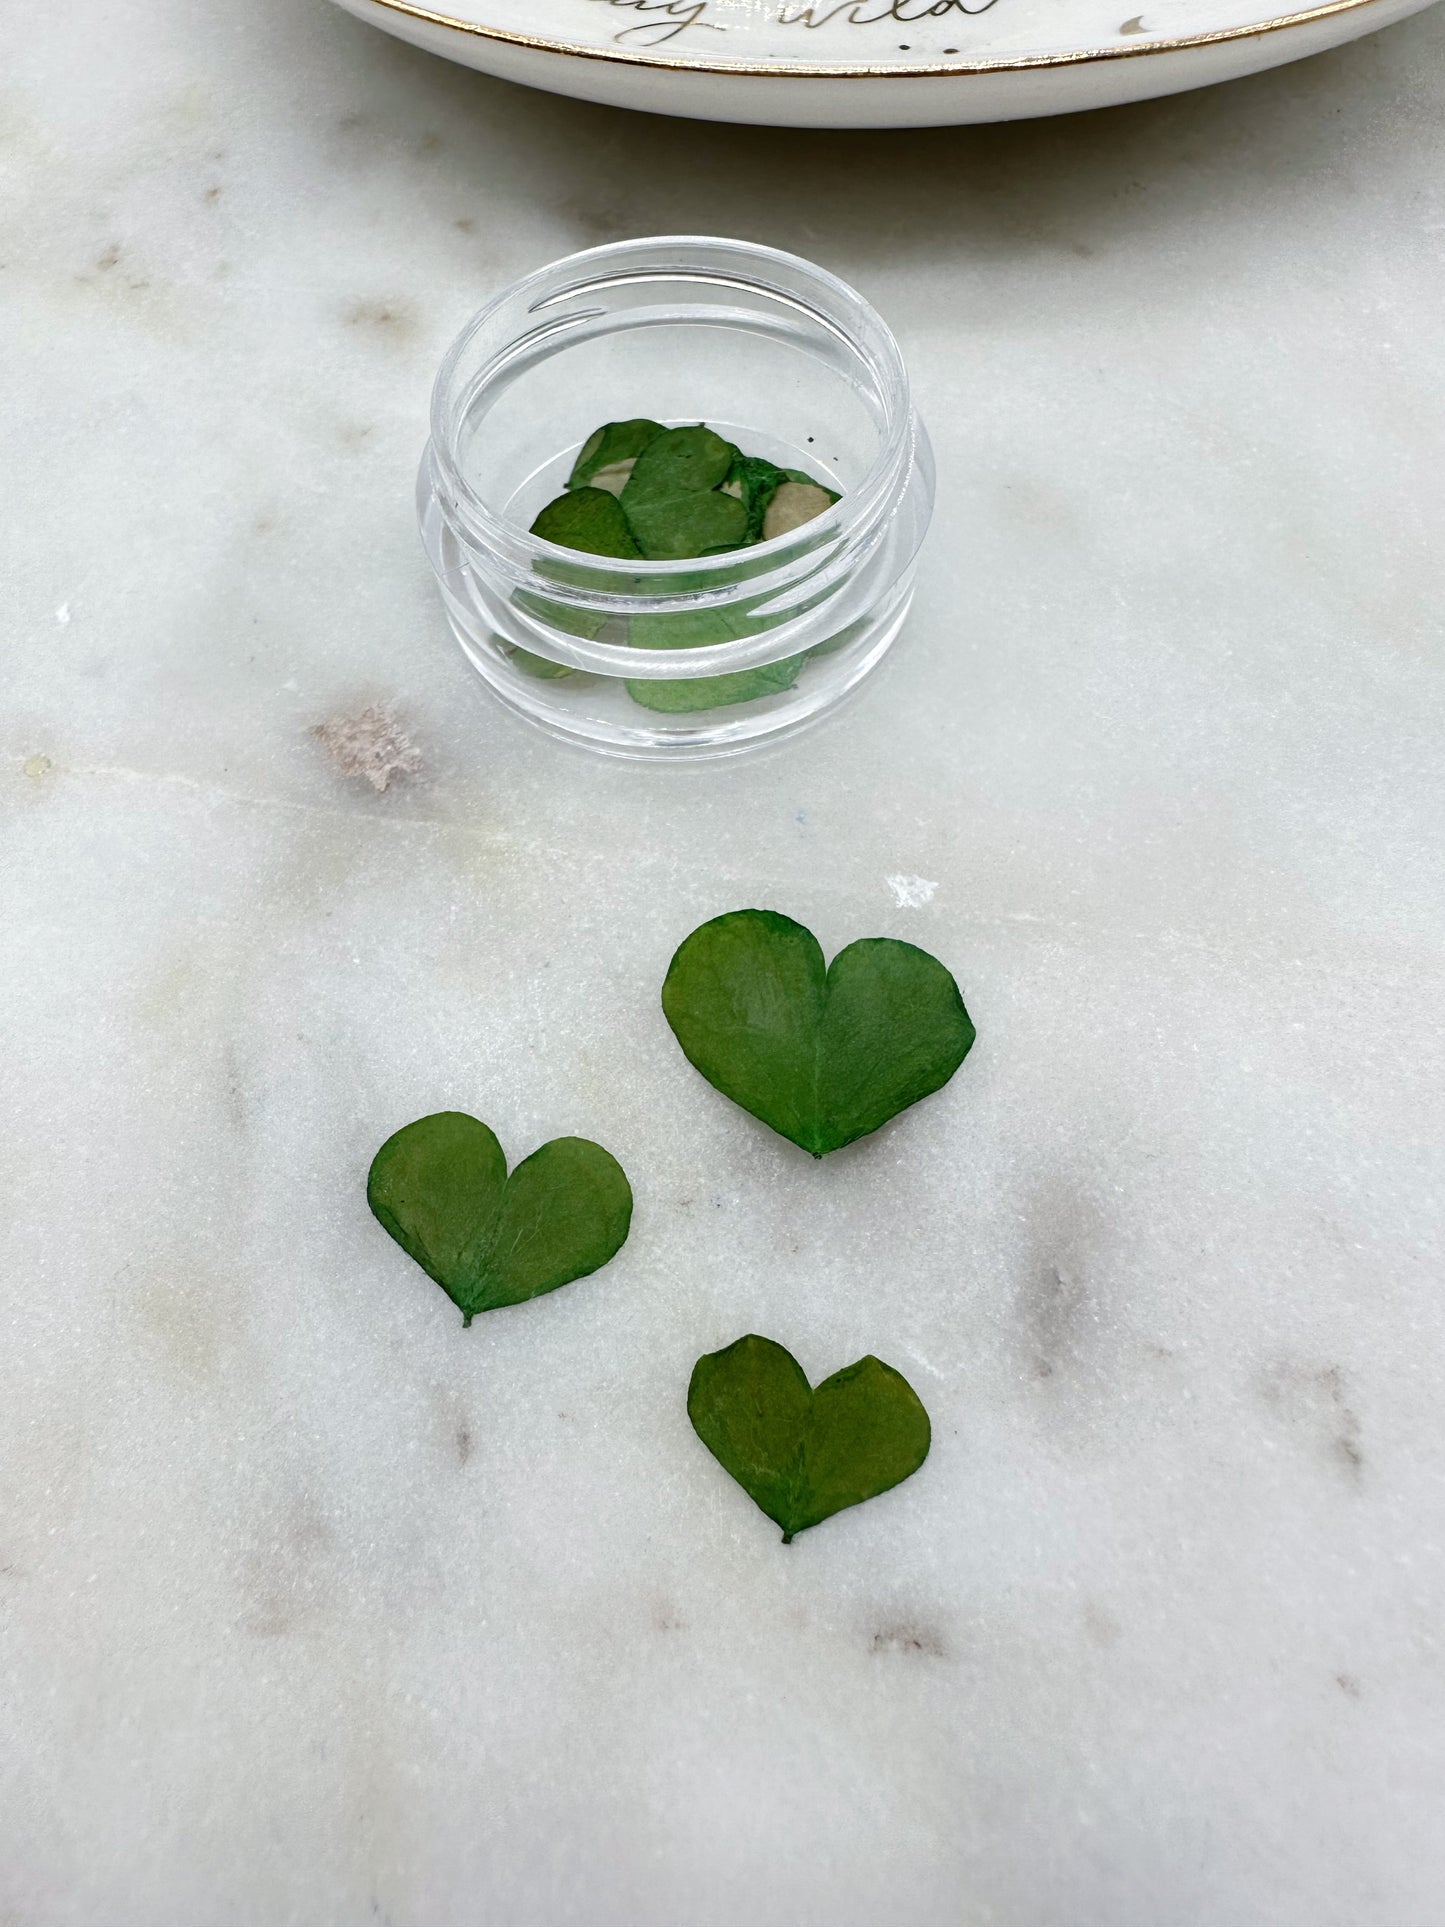 20 Pcs Mini Heart Shaped Leaves Pot